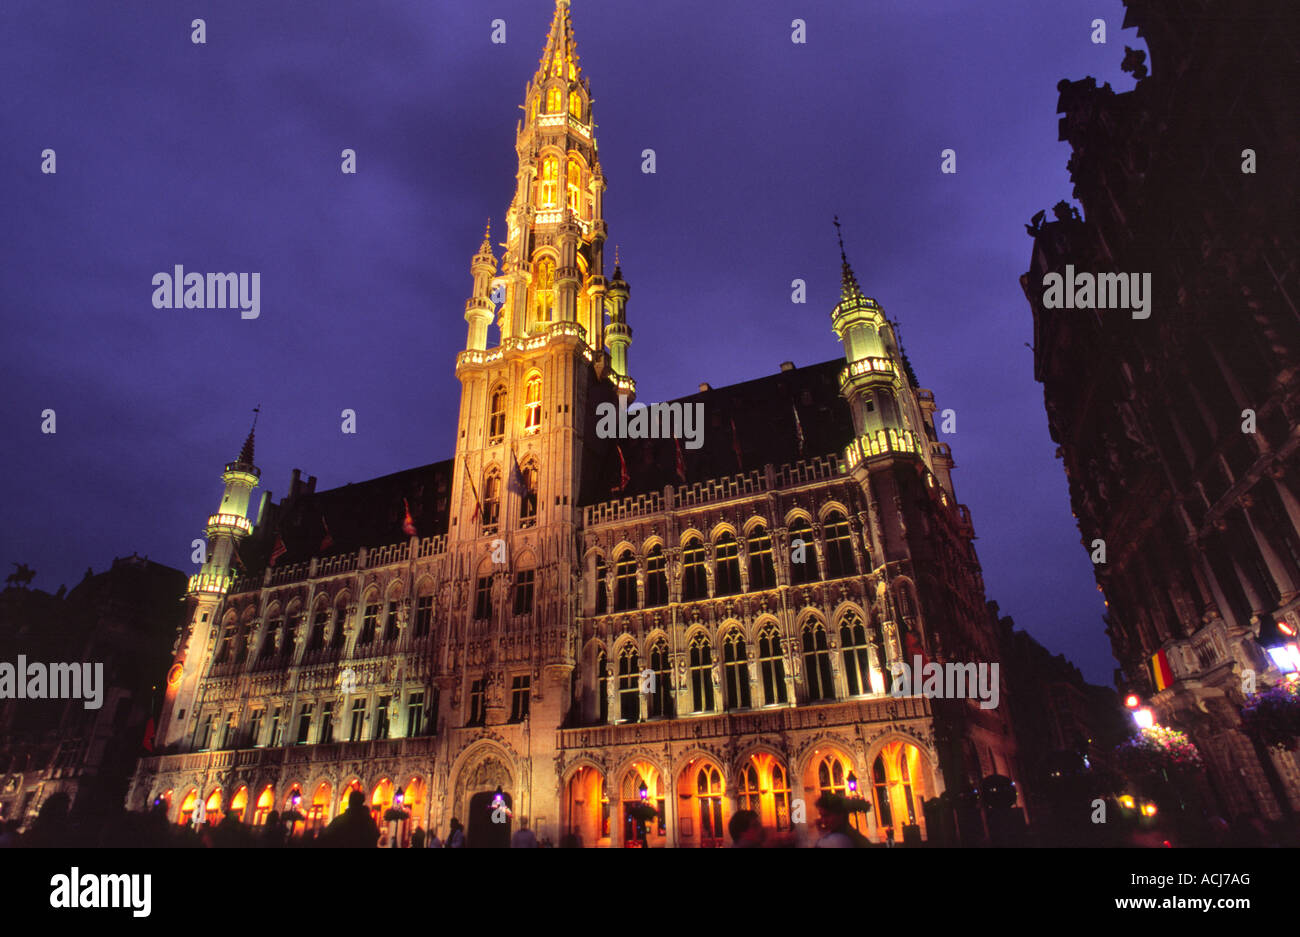 Ayuntamiento de Bruselas iluminada al anochecer, Grand Place, Bruselas, Bélgica. Foto de stock